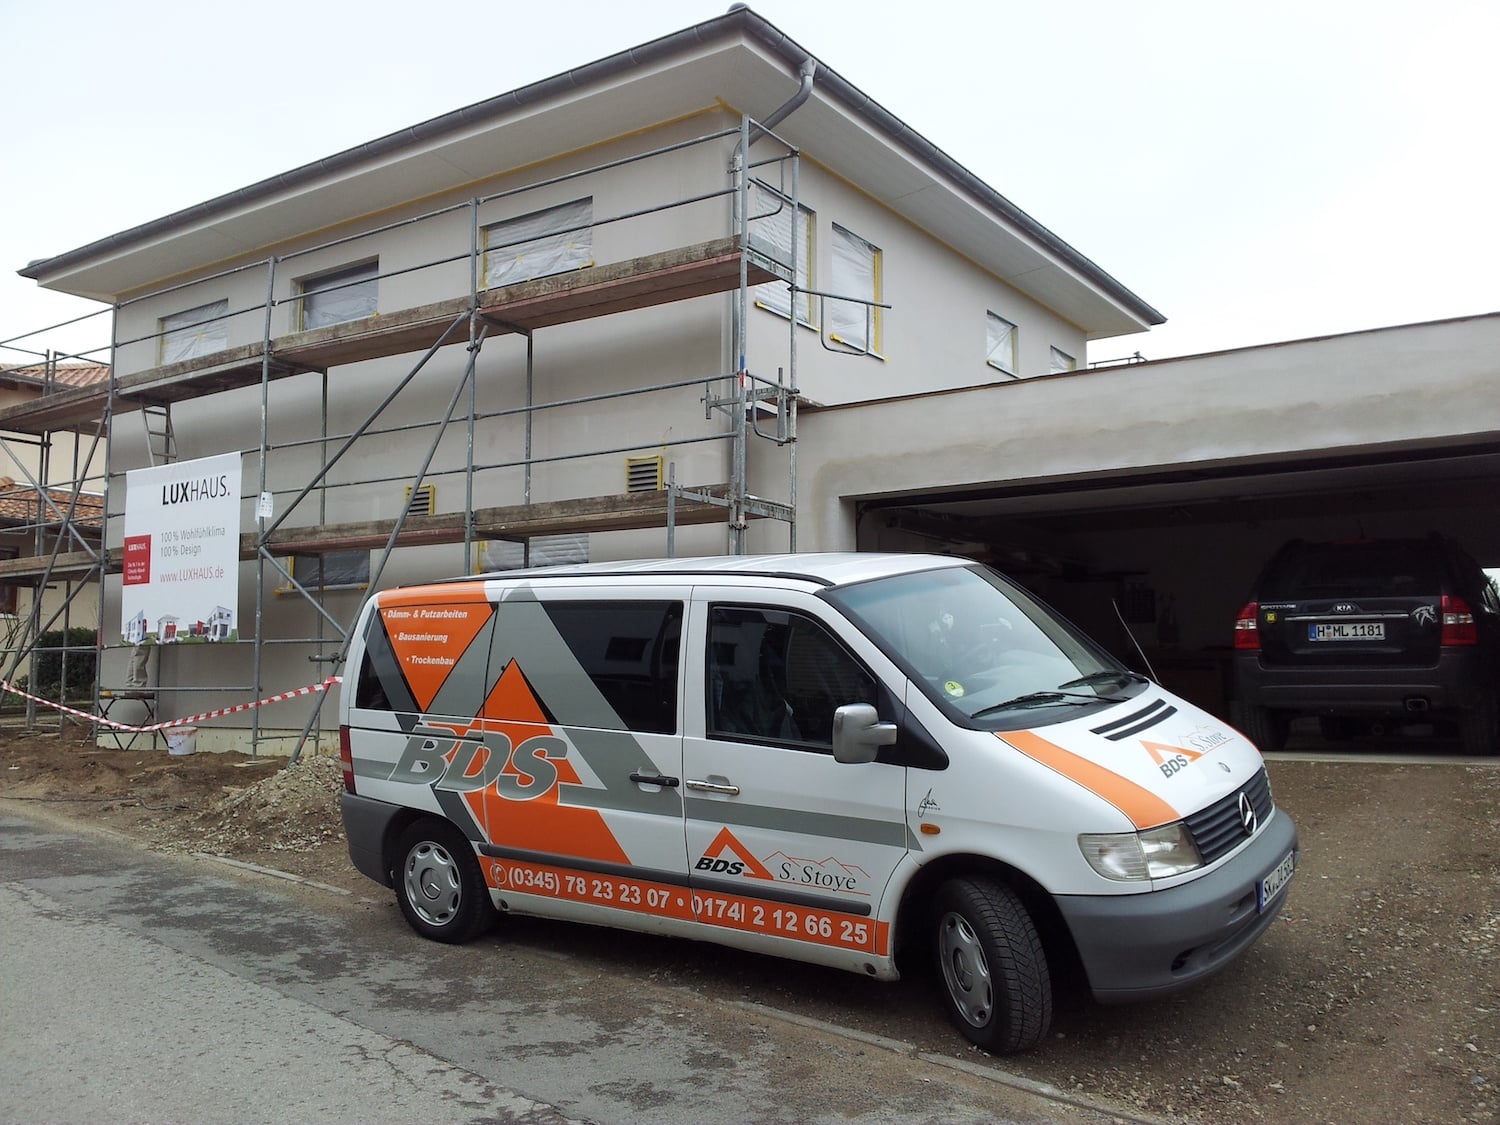 Trockenbau Arbeiten von Bau & Dienstleistungsservice S. Stoye aus Schkopau & Merseburg